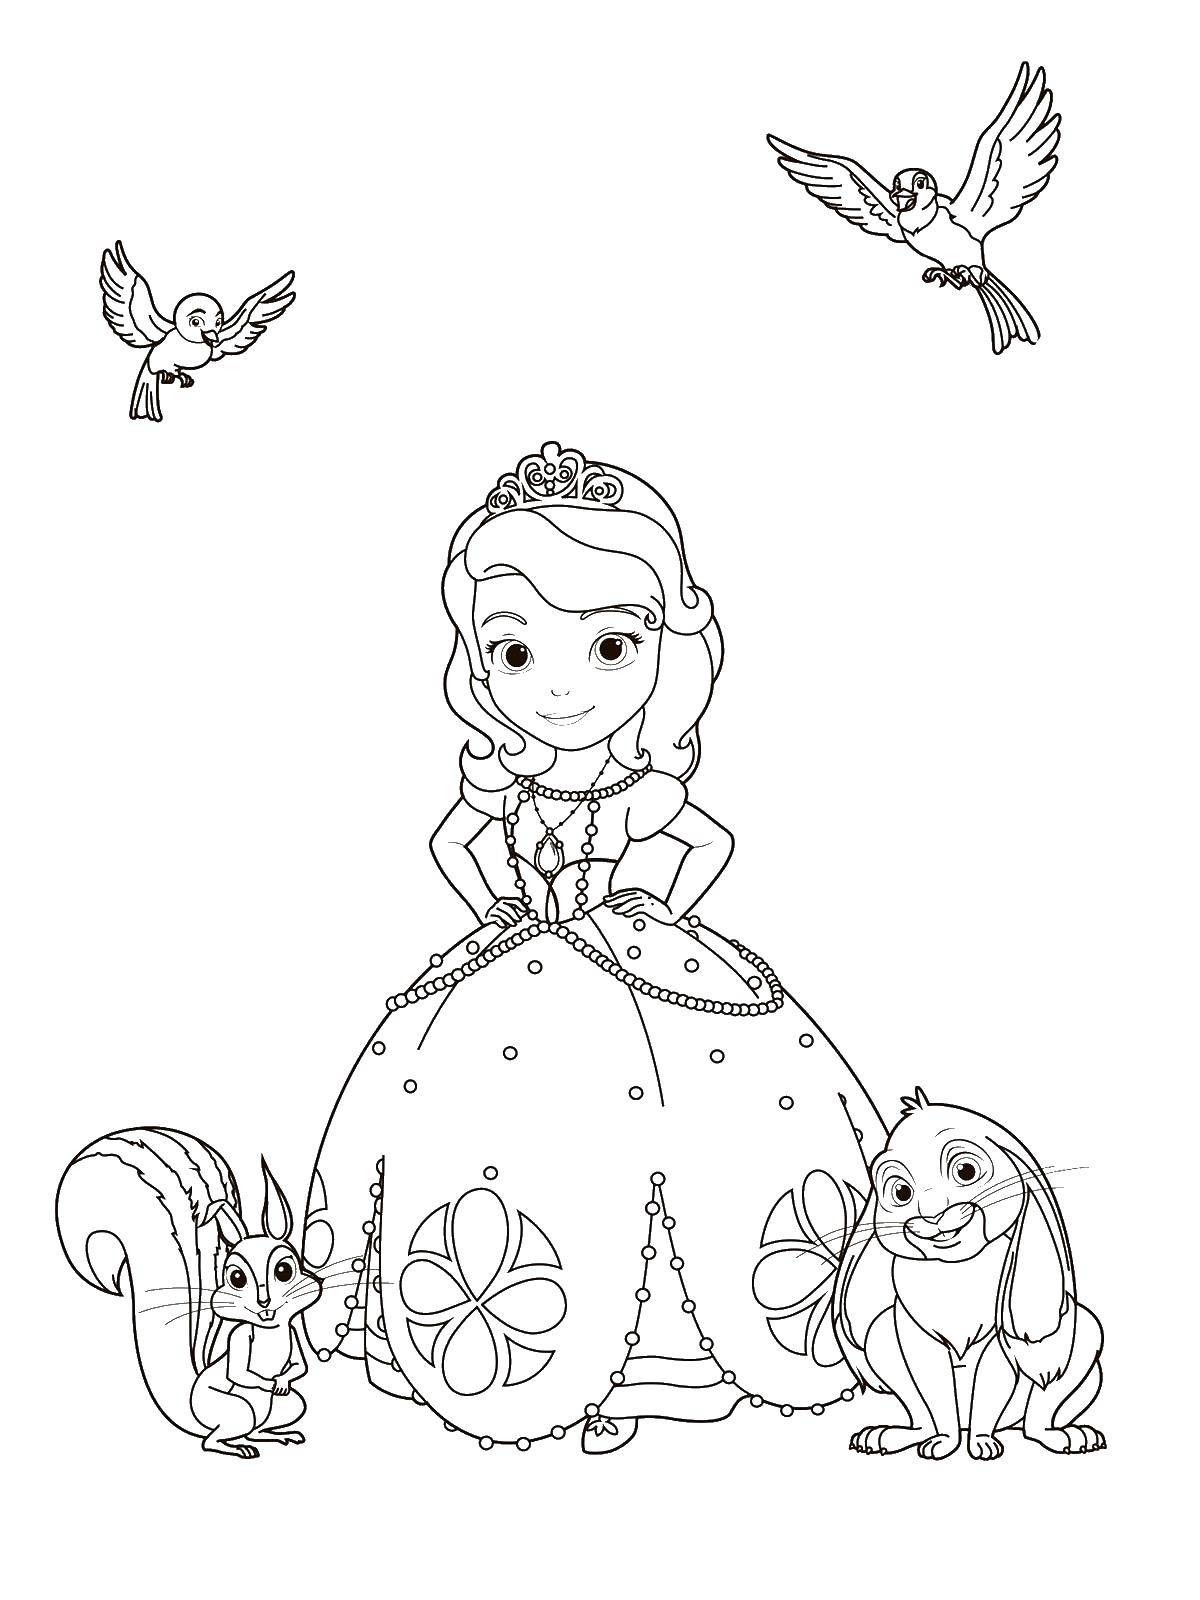 Название: Раскраска Принцесса. Категория: Персонажи из сказок. Теги: принцесса, платье, птицы, кролик, белка.